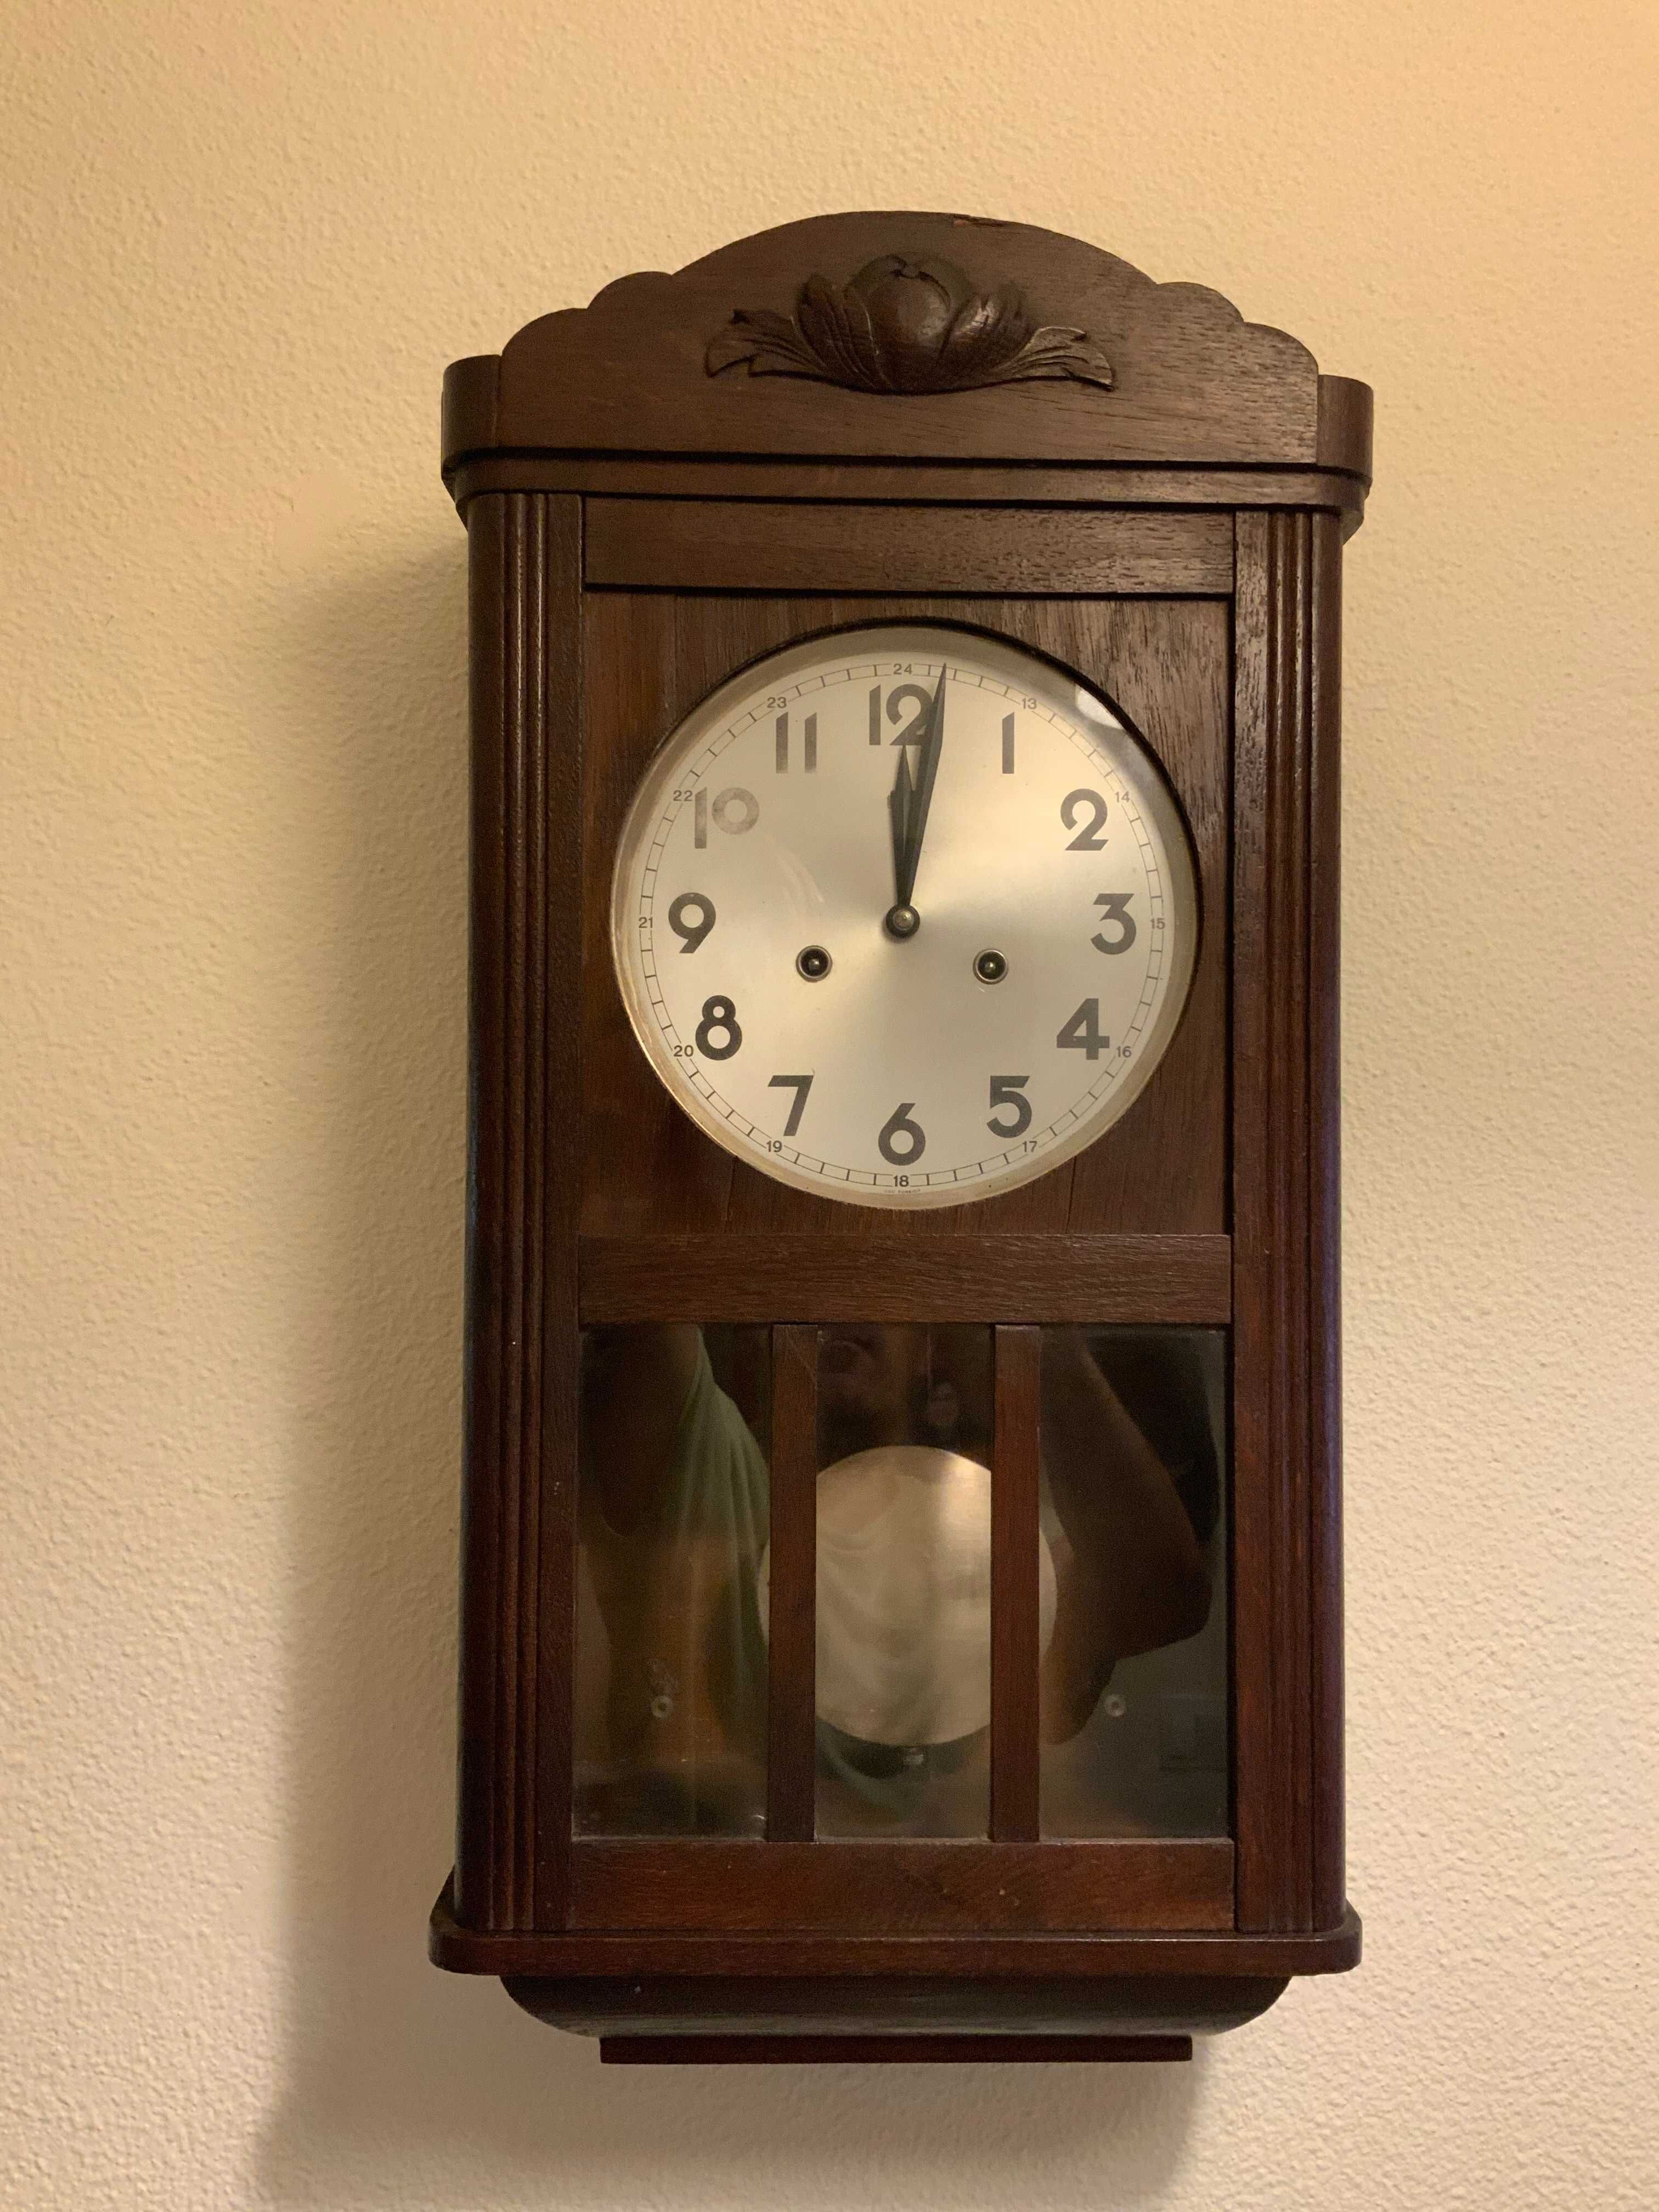 Relógio de parede com 60 anos.